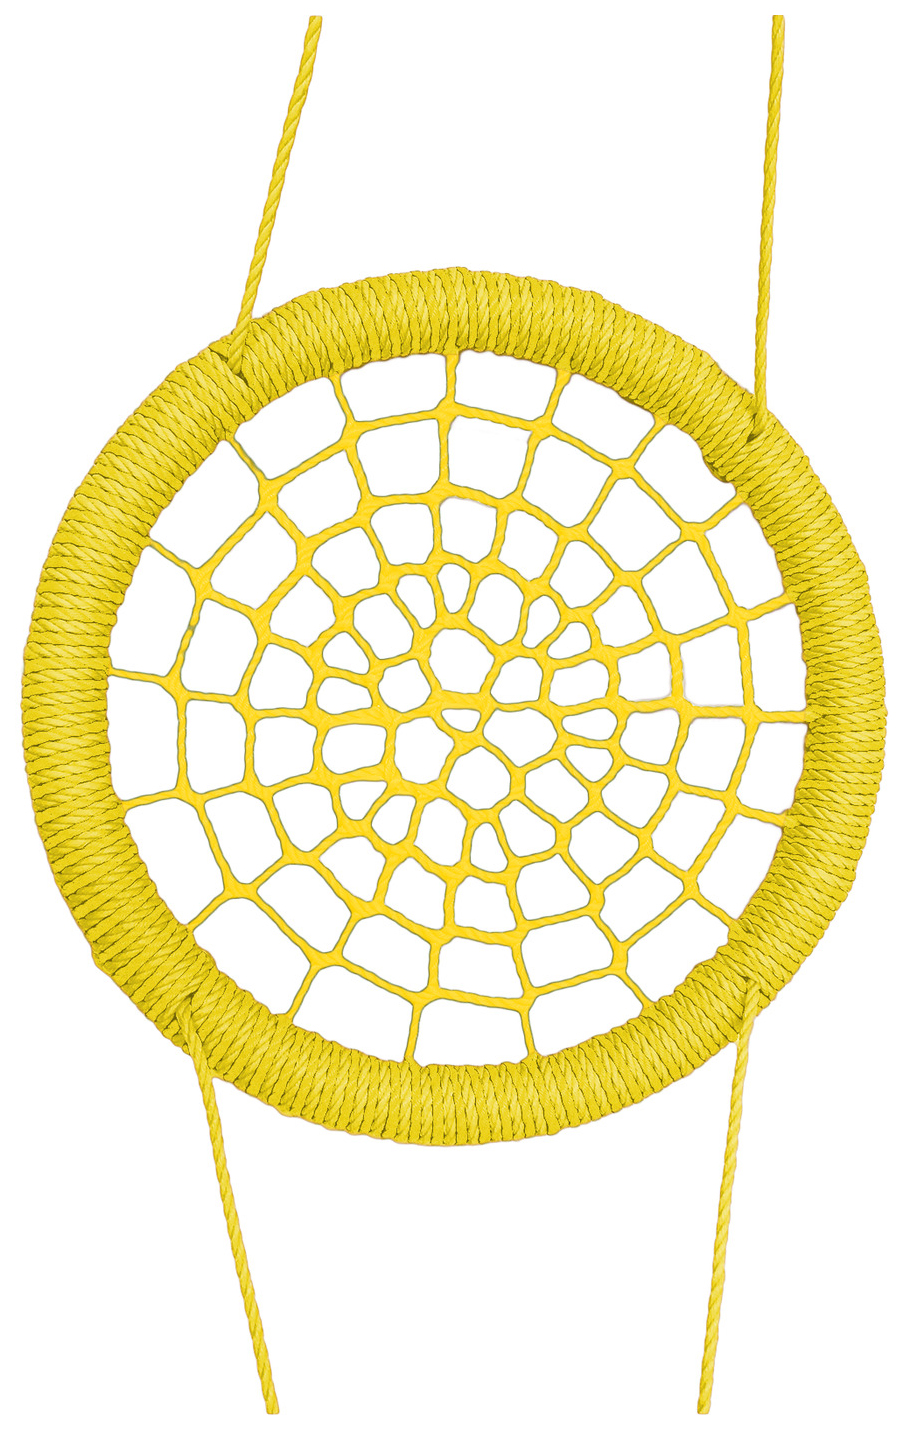 Качели-гнездо подвесные STORK NEST Премиум d 80 см Обод Желтый толщ. нити 15 мм желтый